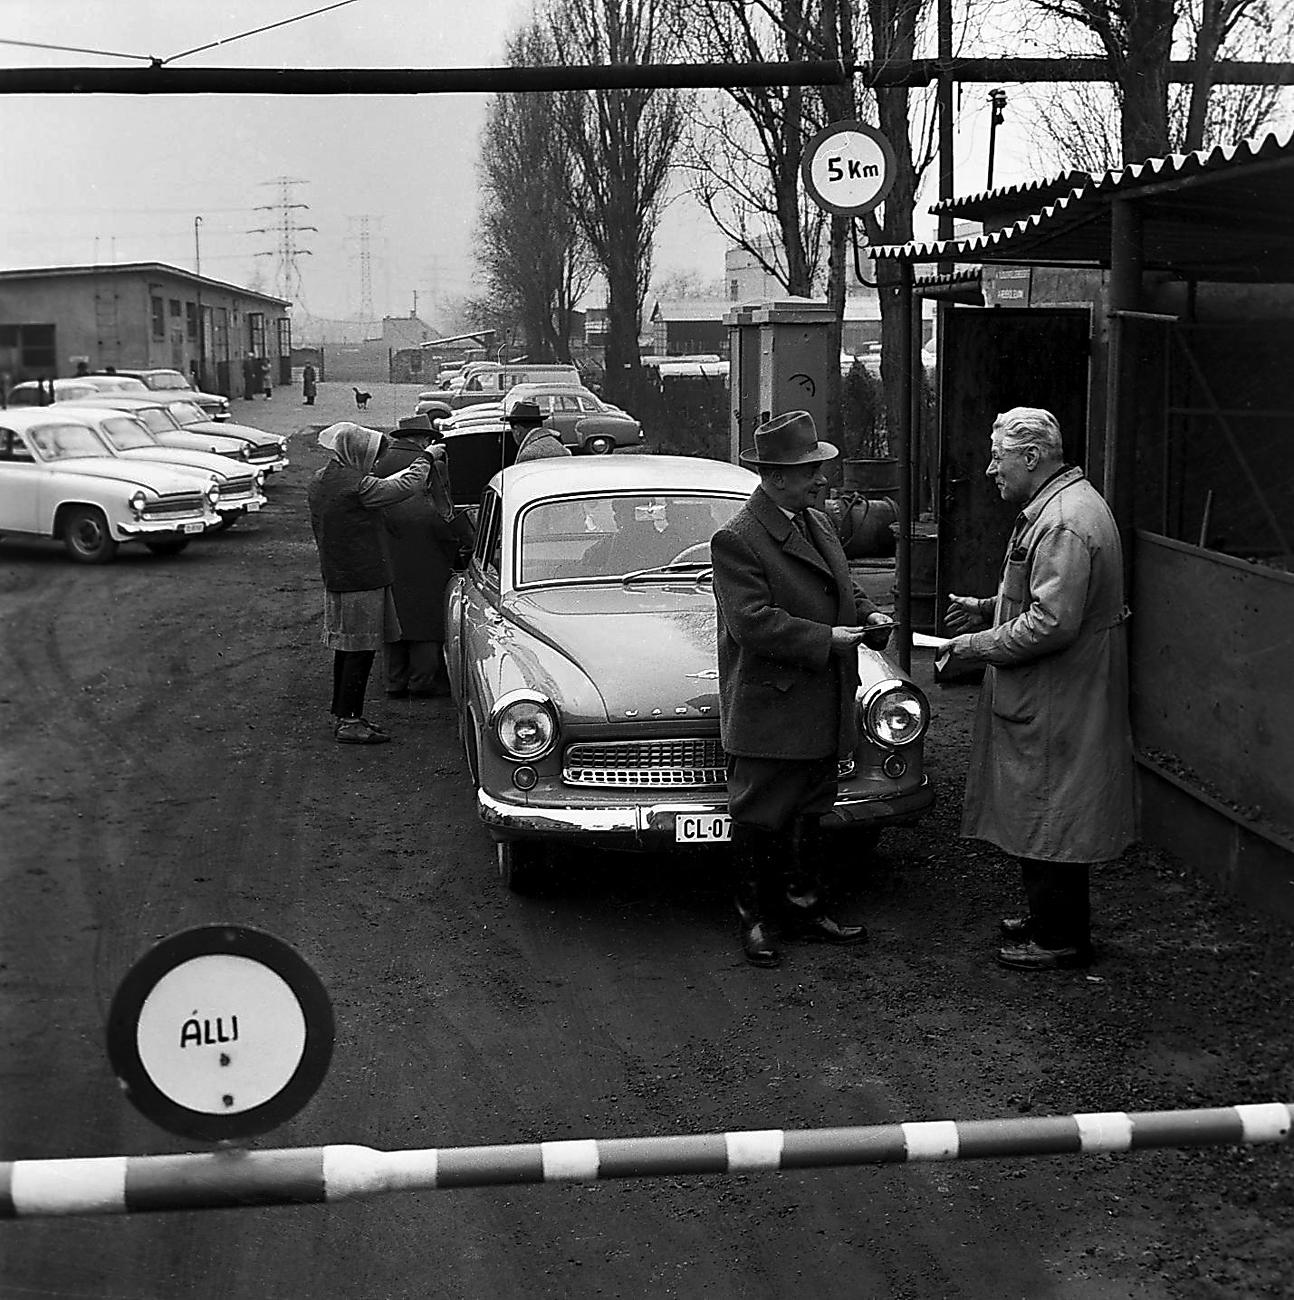 1964 mérföldkő volt a hazai személygépkocsi-értékesítés történetében: ebben az évben hozta létre a Belkereskedelmi Minisztérium a Merkur Személygépkocsi Értékesítési Vállalatot.